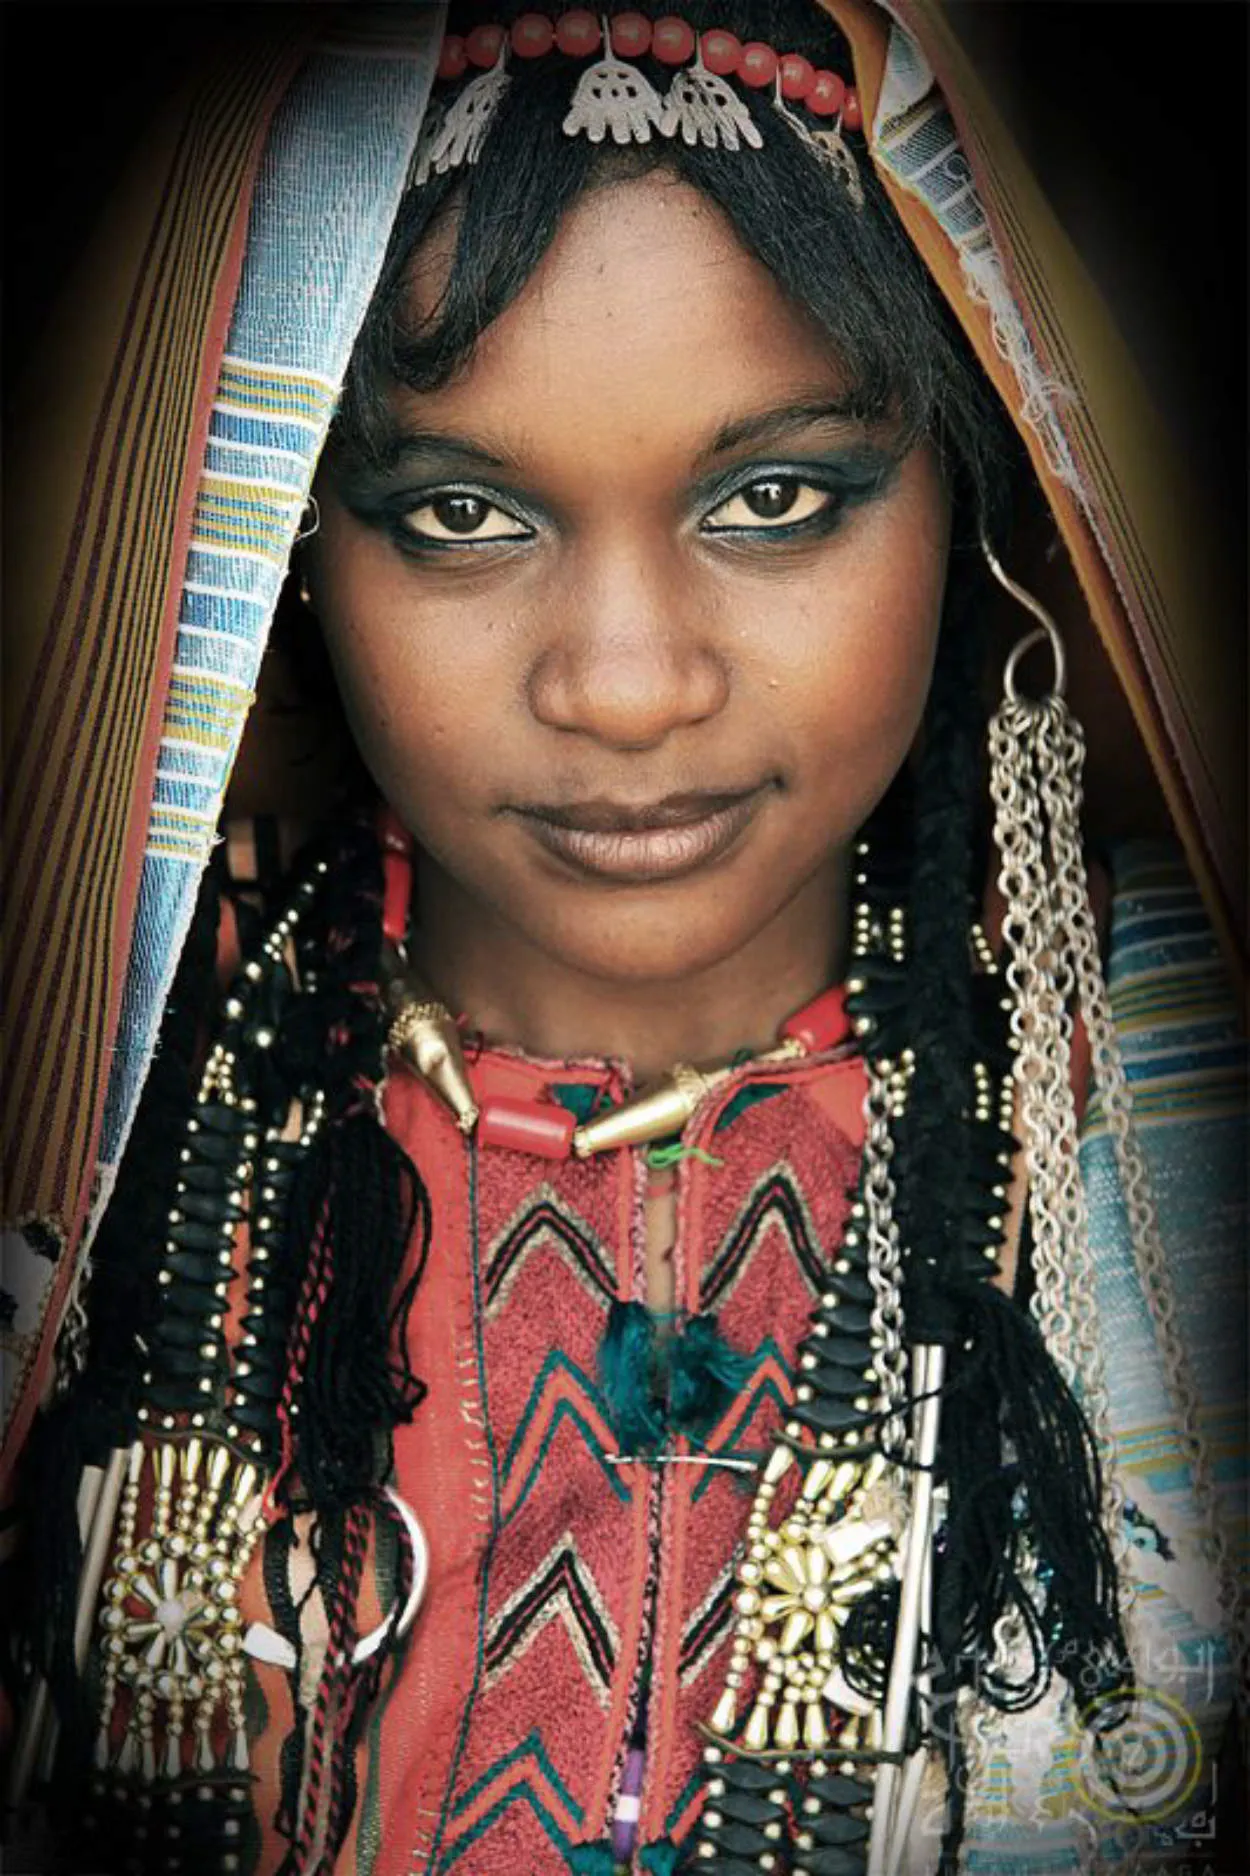 Libya beautiful woman or selebgram